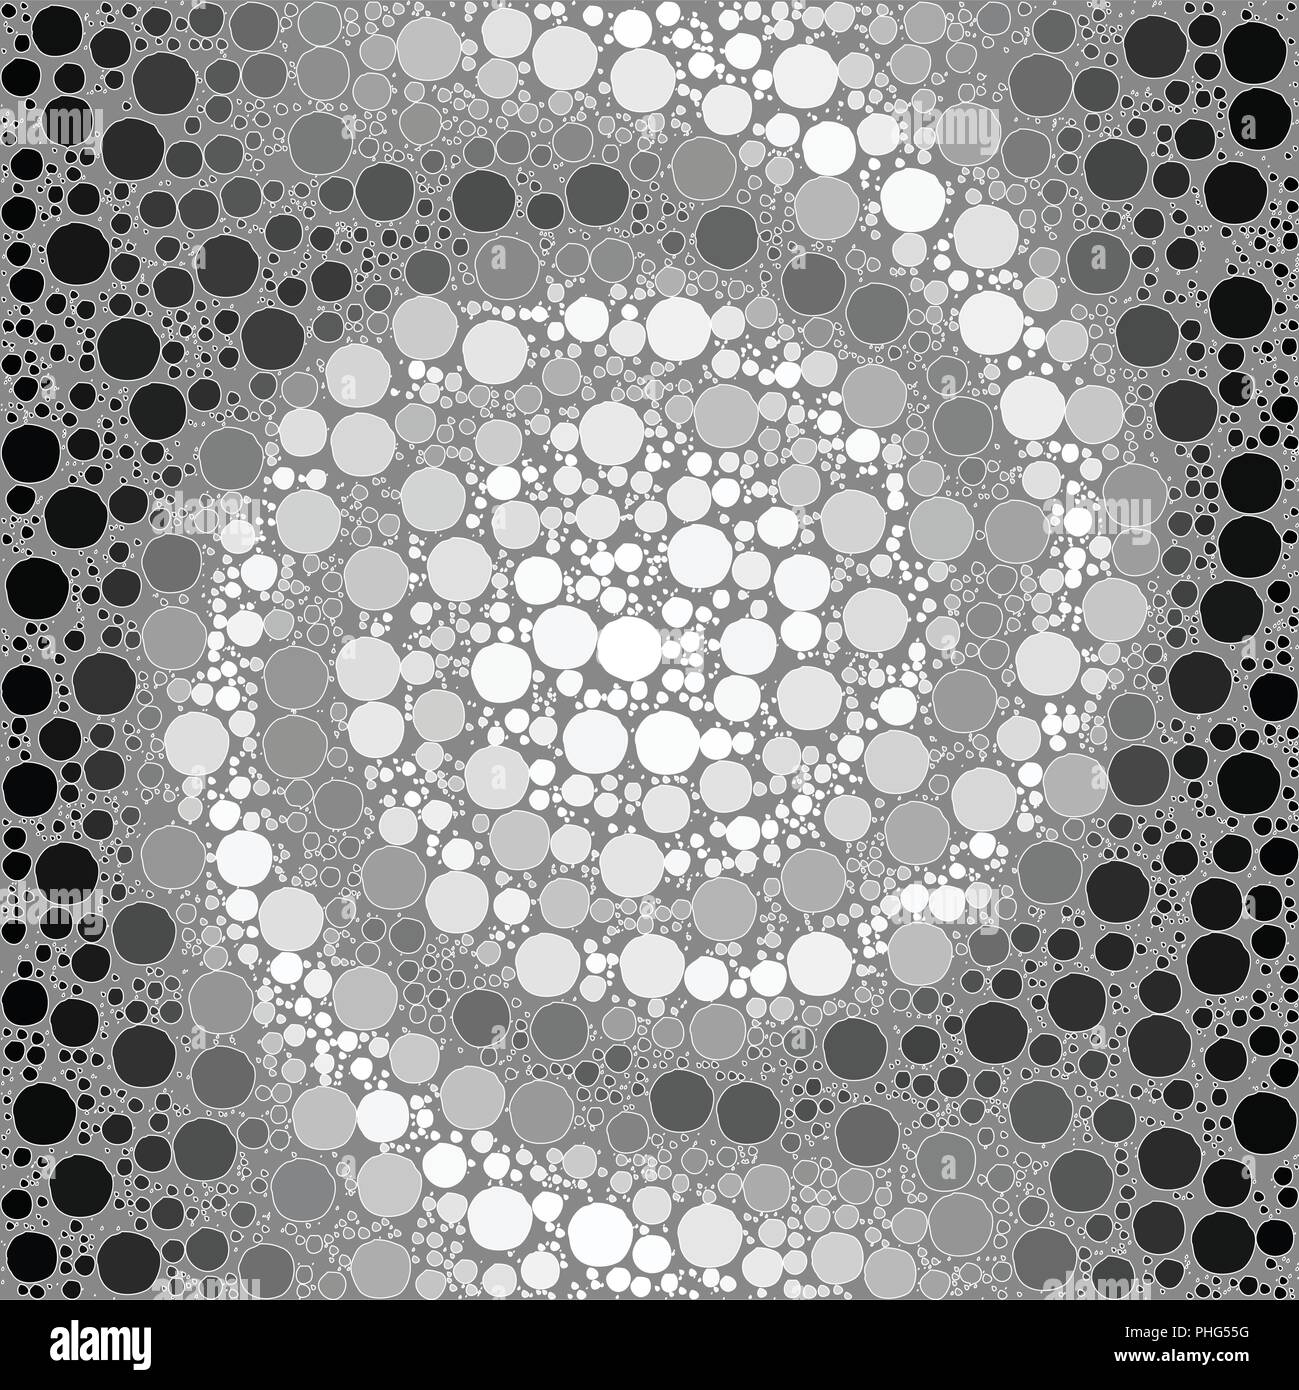 Antecedentes vectoriales de una espiral en blanco y negro del gradiente y formas redondas parecidas a burbujas estilizados. Ilustración del Vector